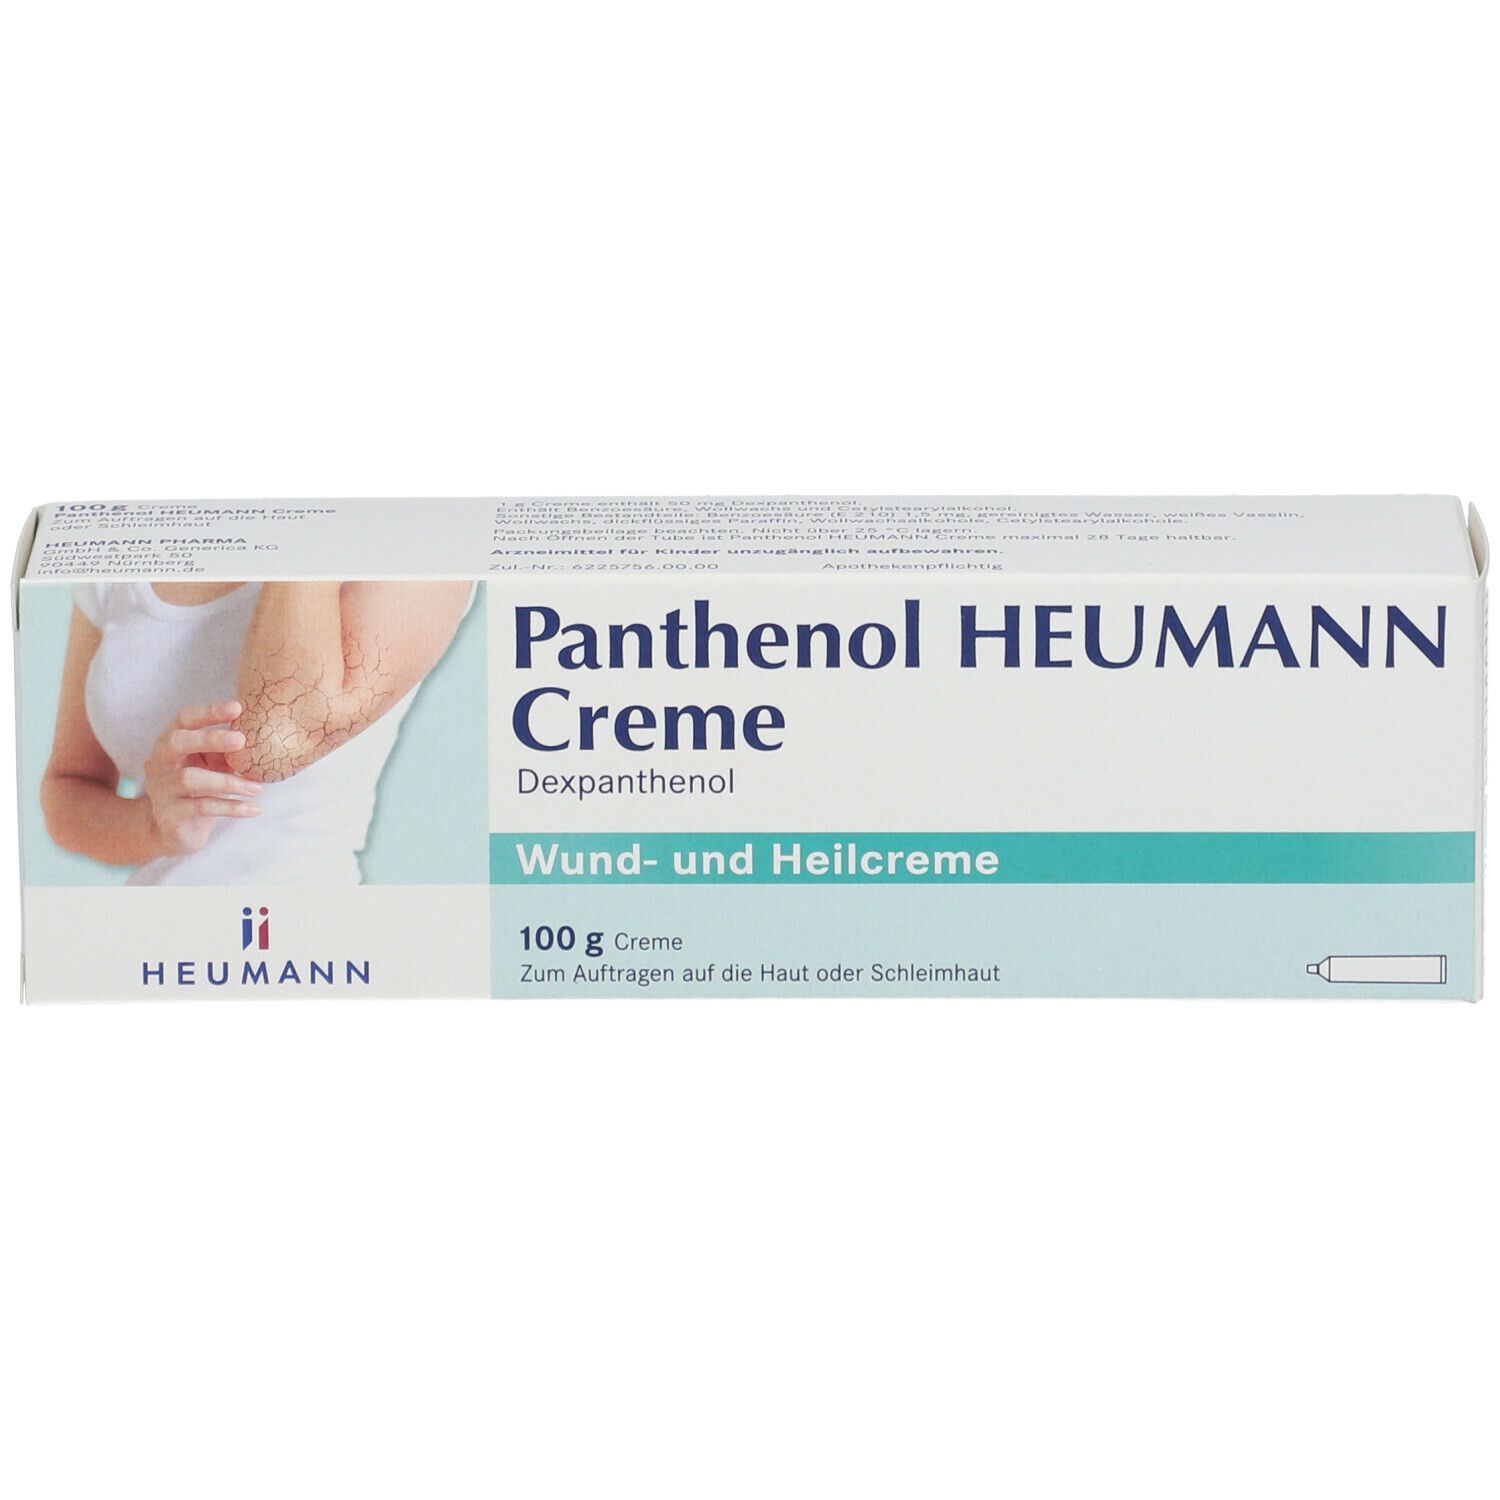 Panthenol Heumann Creme®